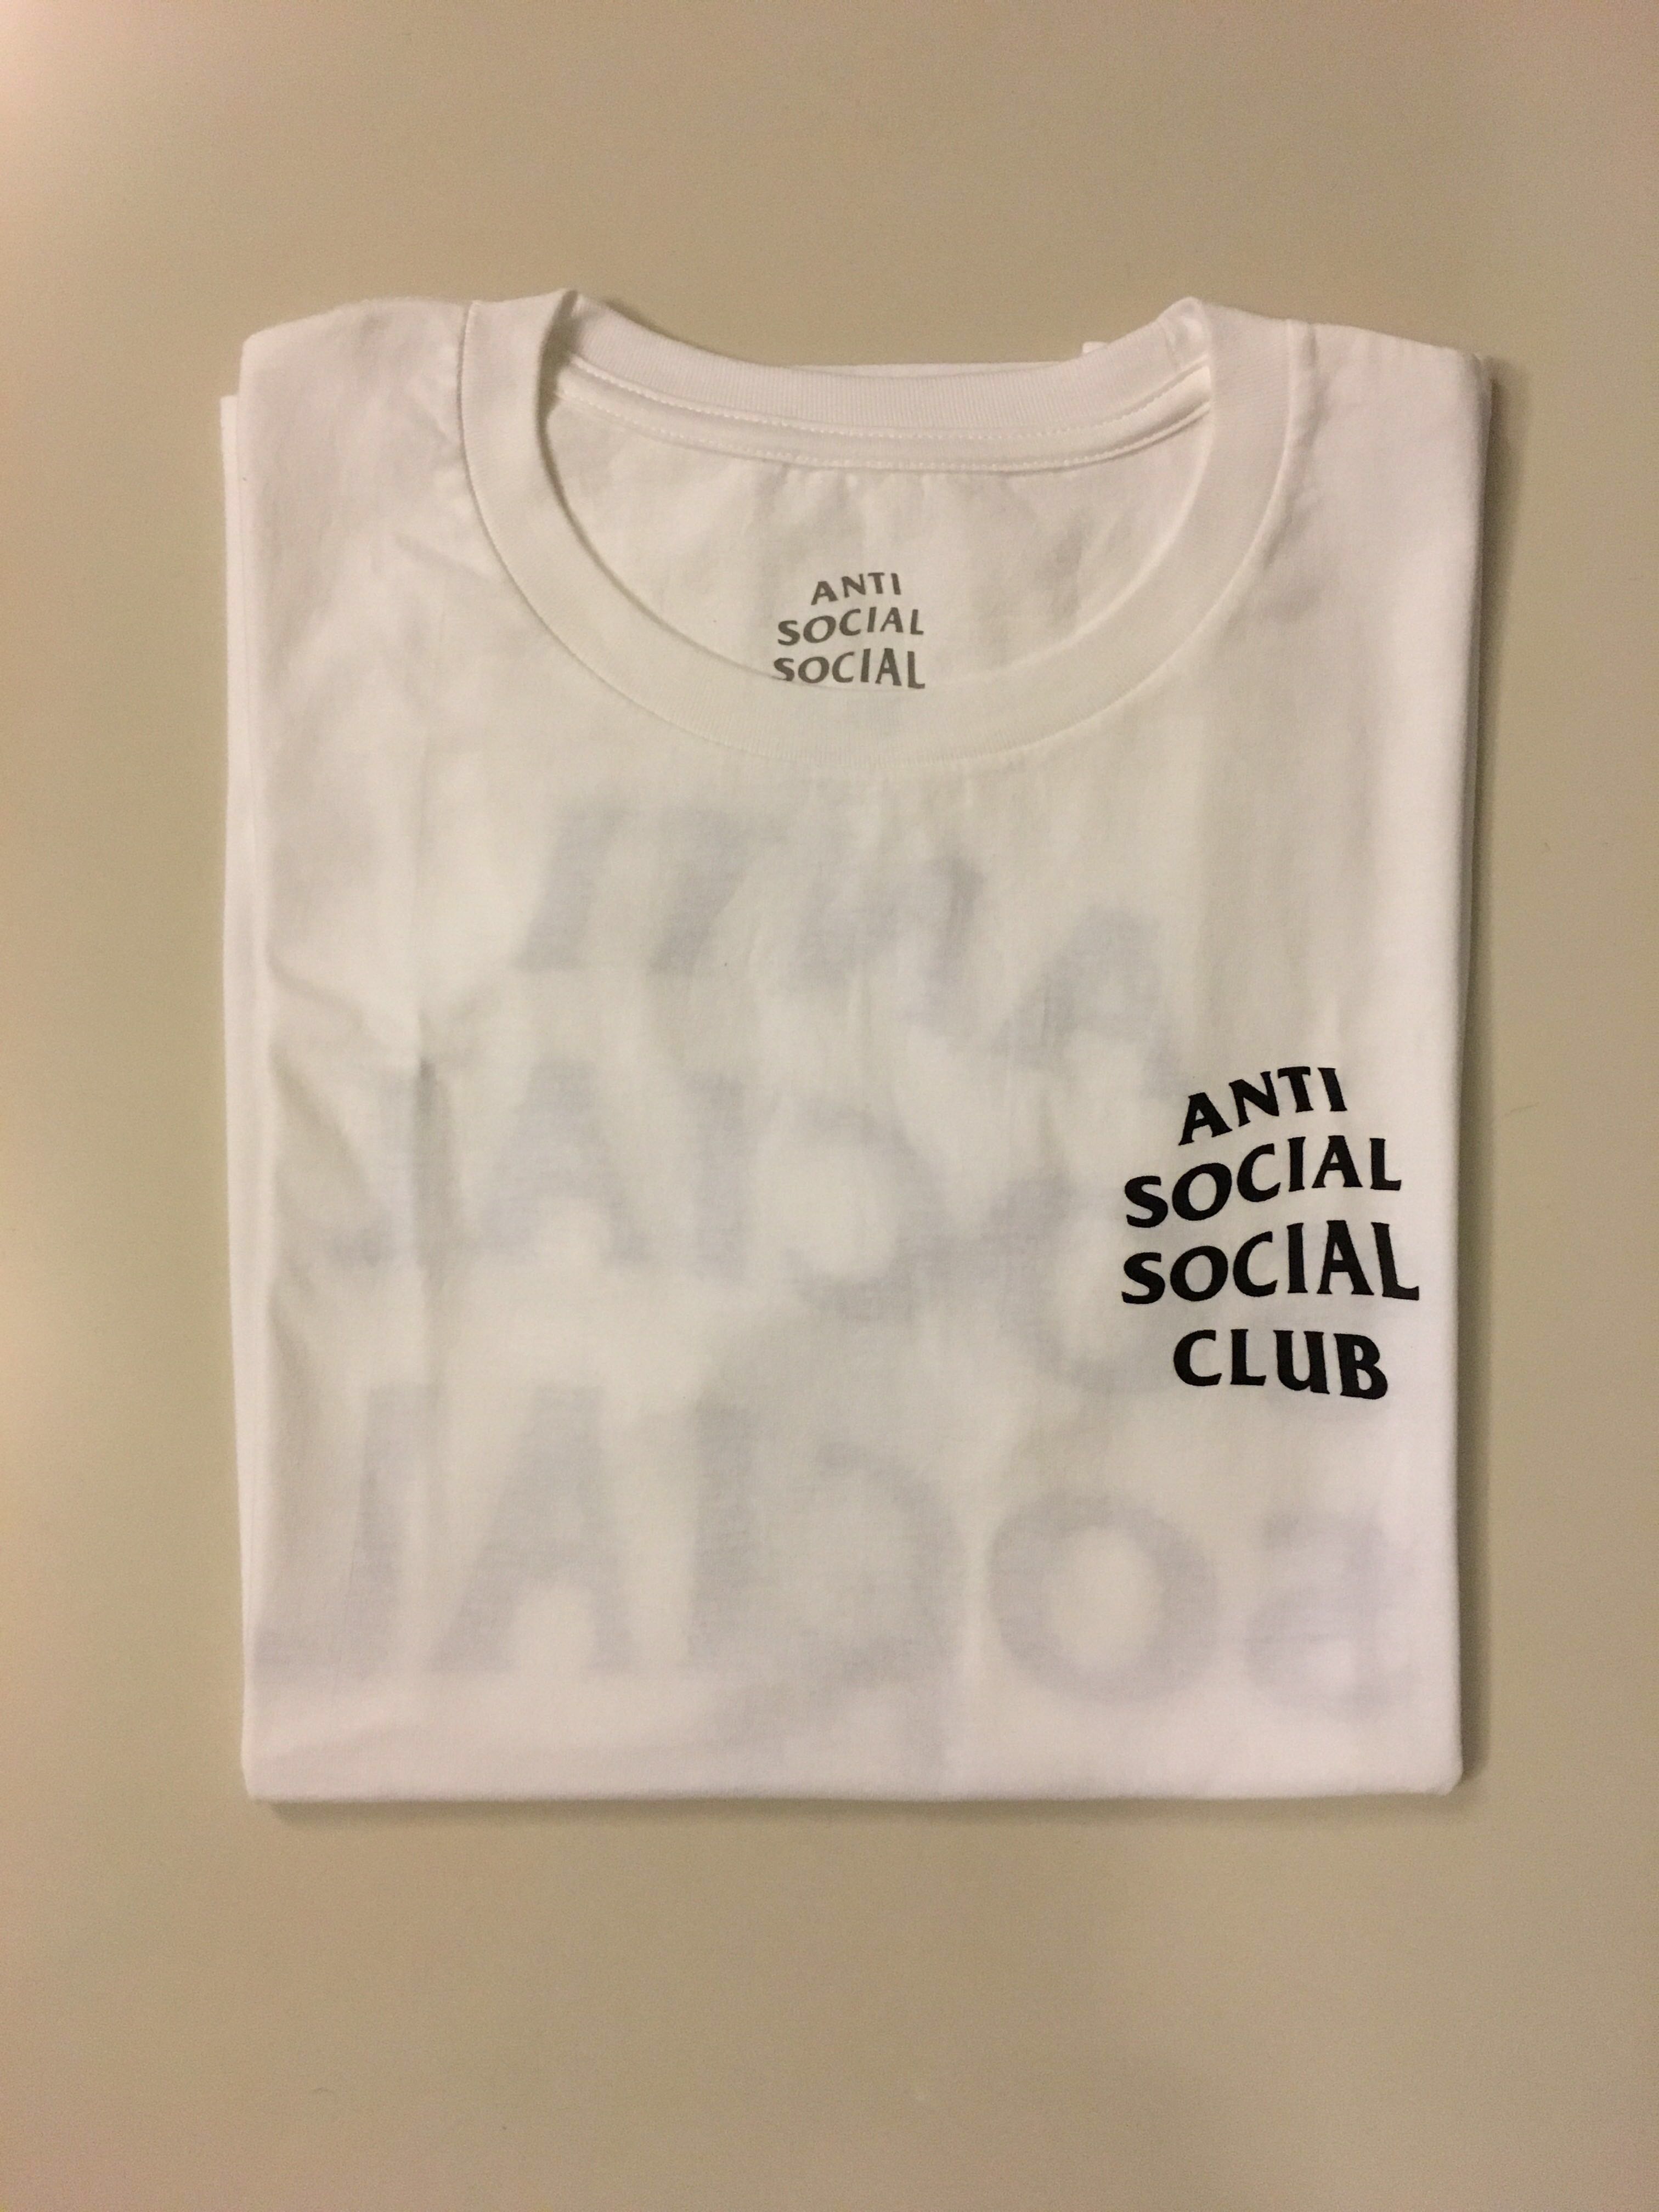 anti social social club shirt legit check